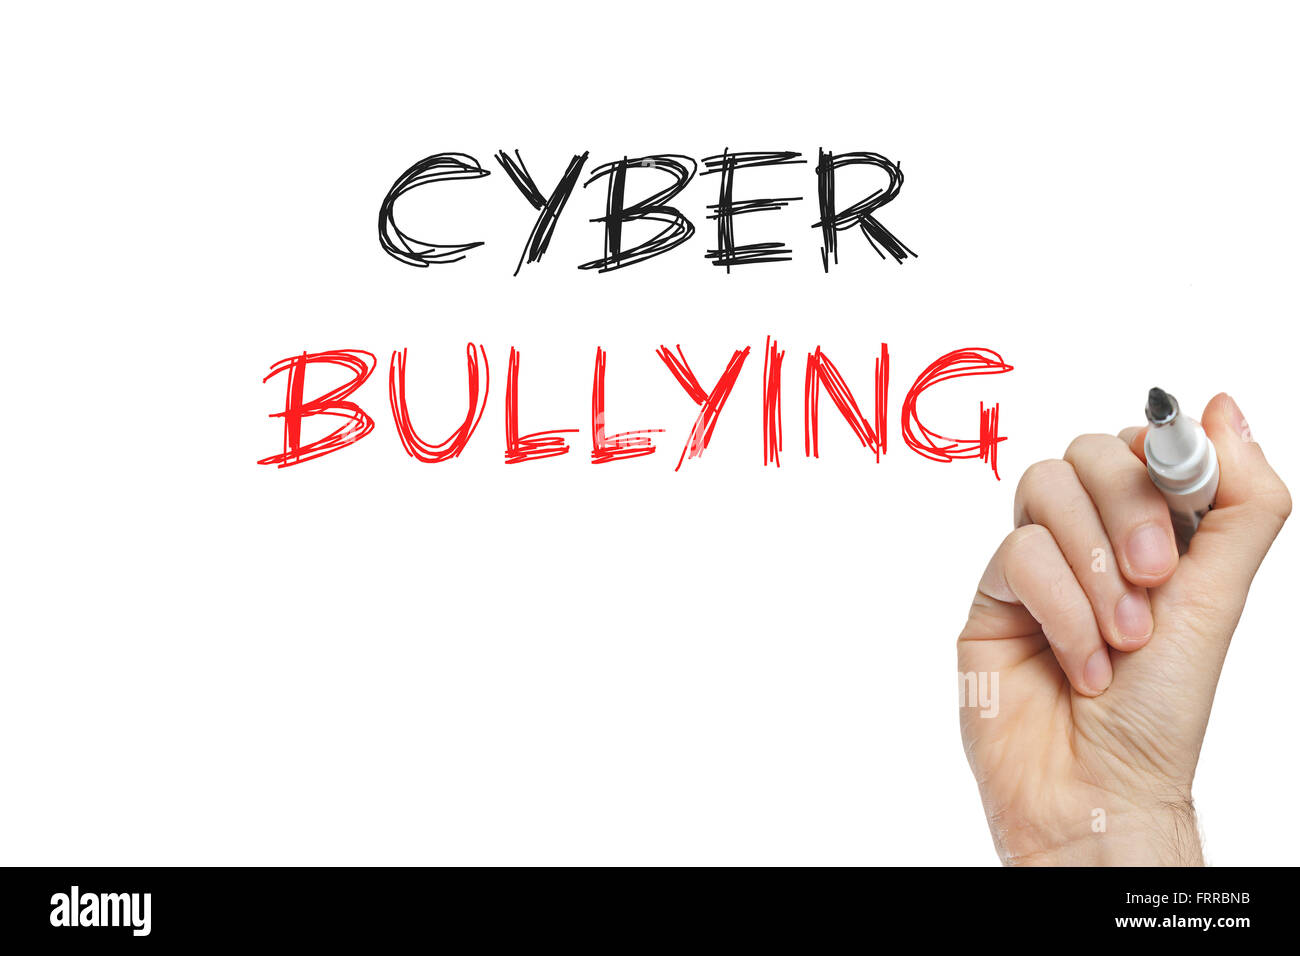 Escritura a mano cyber bullying en una pizarra blanca Foto de stock